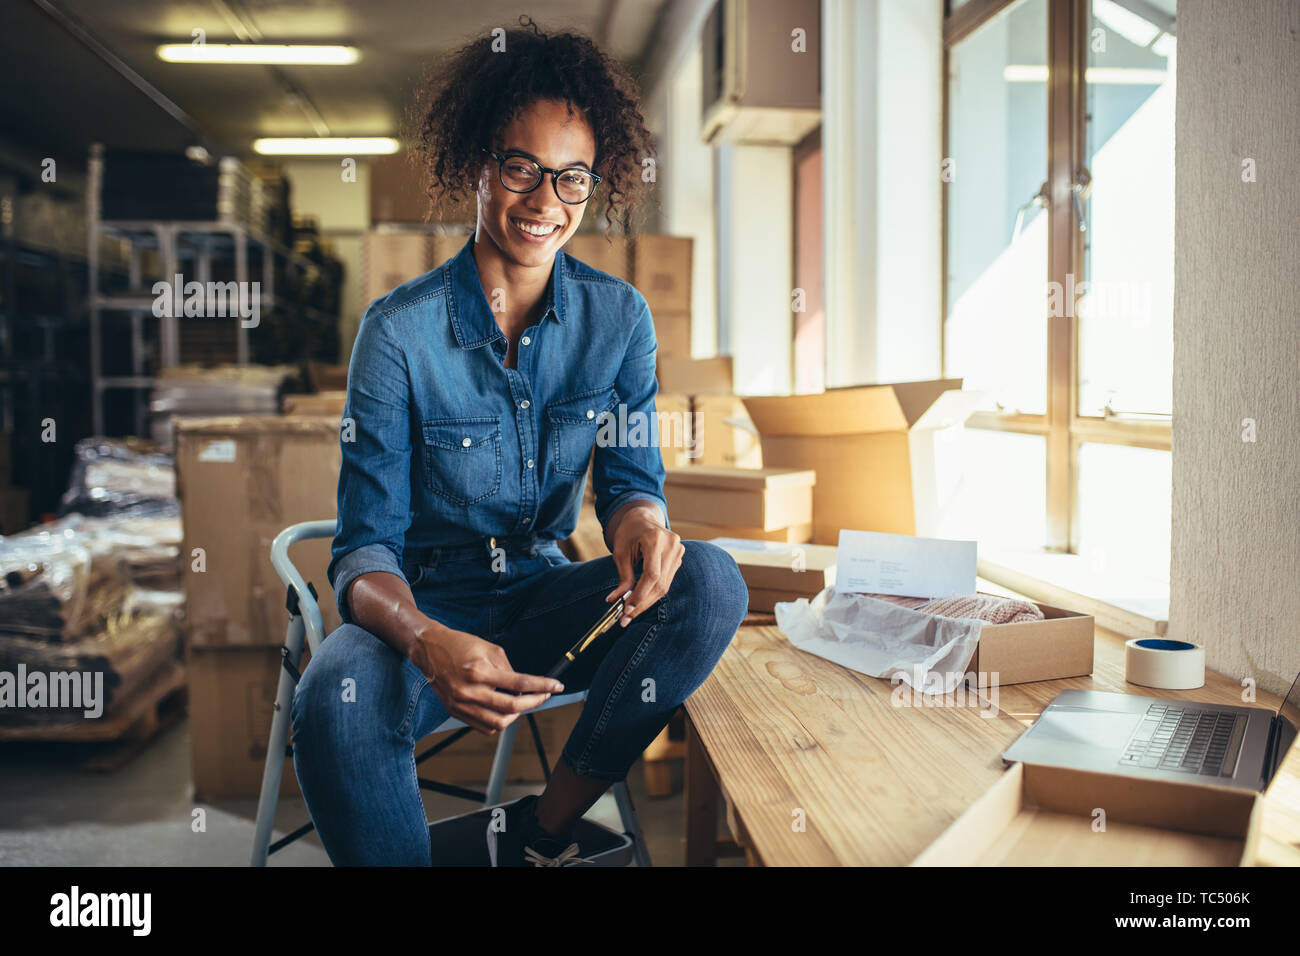 Lächelnden jungen Frau an ihrem Arbeitsplatz sitzen. Sicher on-line-Geschäft Inhaber an Kamera suchen und lächelnd. Stockfoto